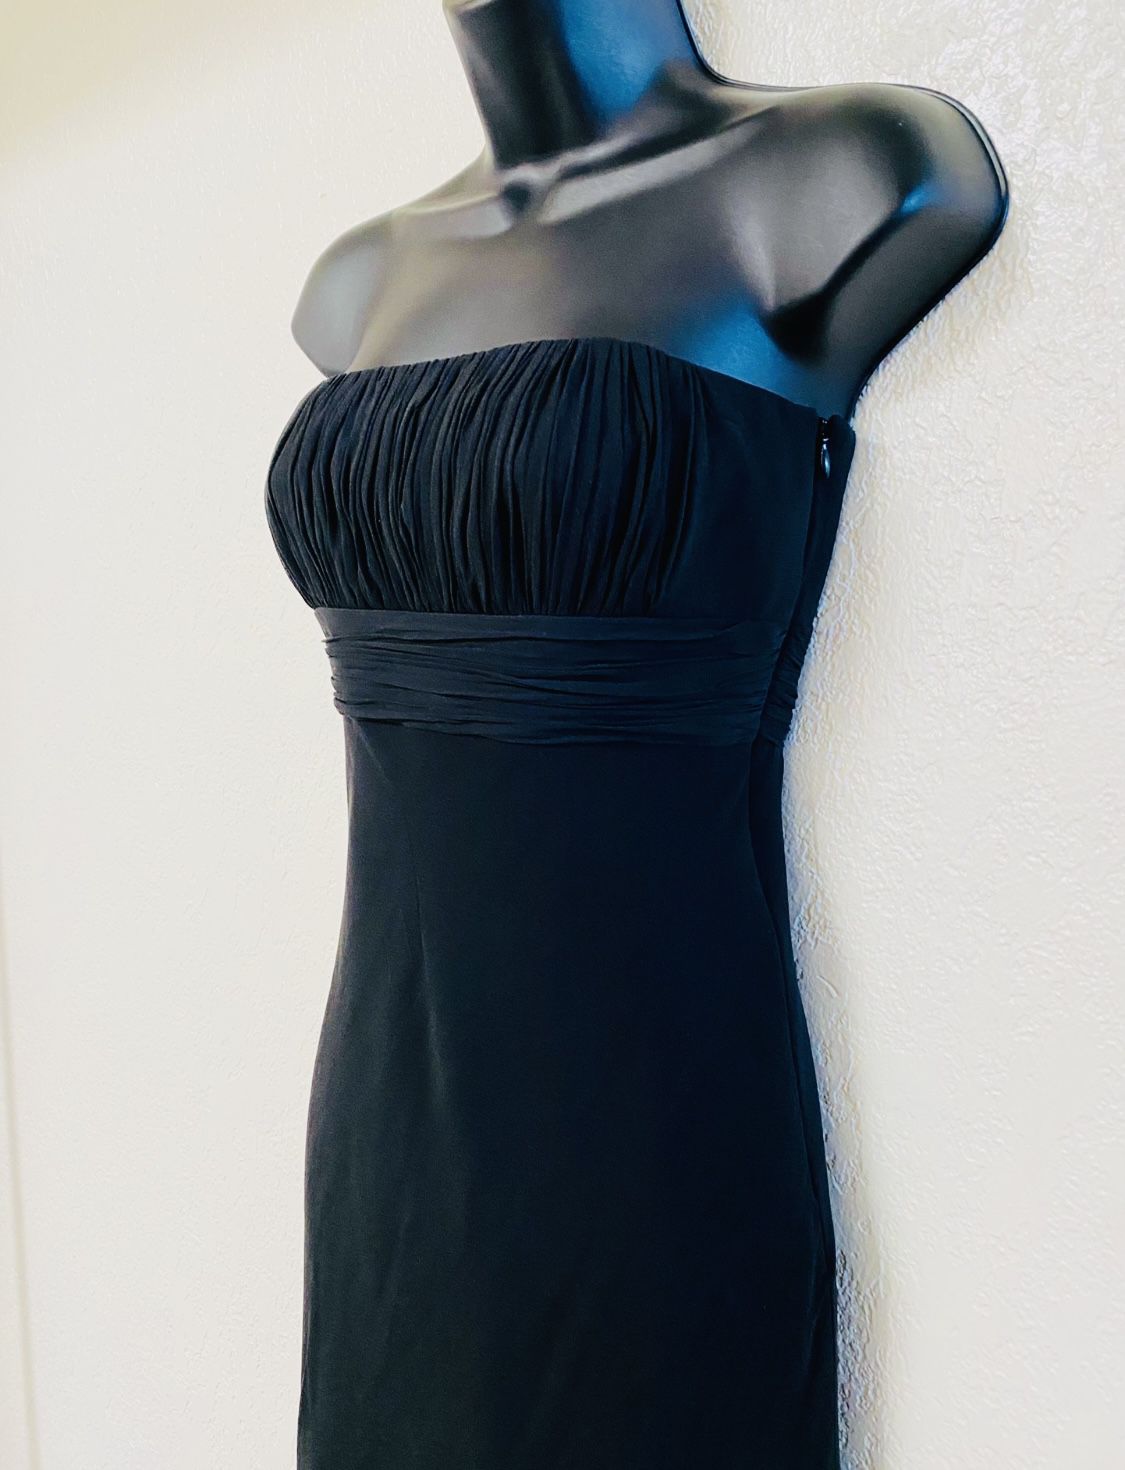 ANN TAYLOR, Black Strapless Chiffon Dress, Size 4P